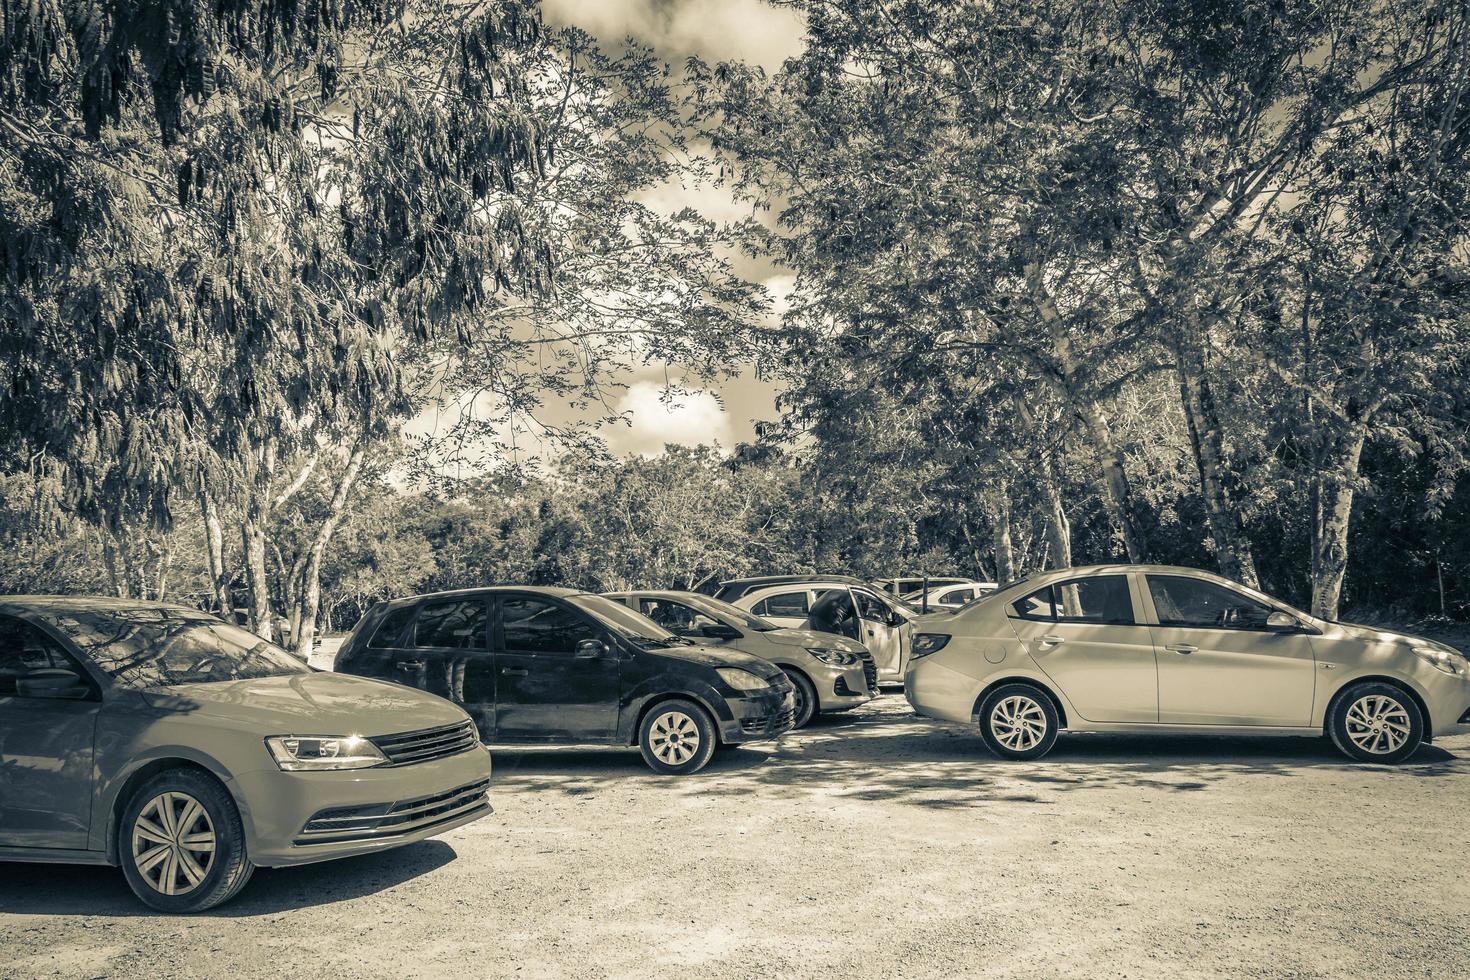 tulum quintana roo mexico 2022 estacionamiento con autos selva a laguna kaan luum mexico. foto